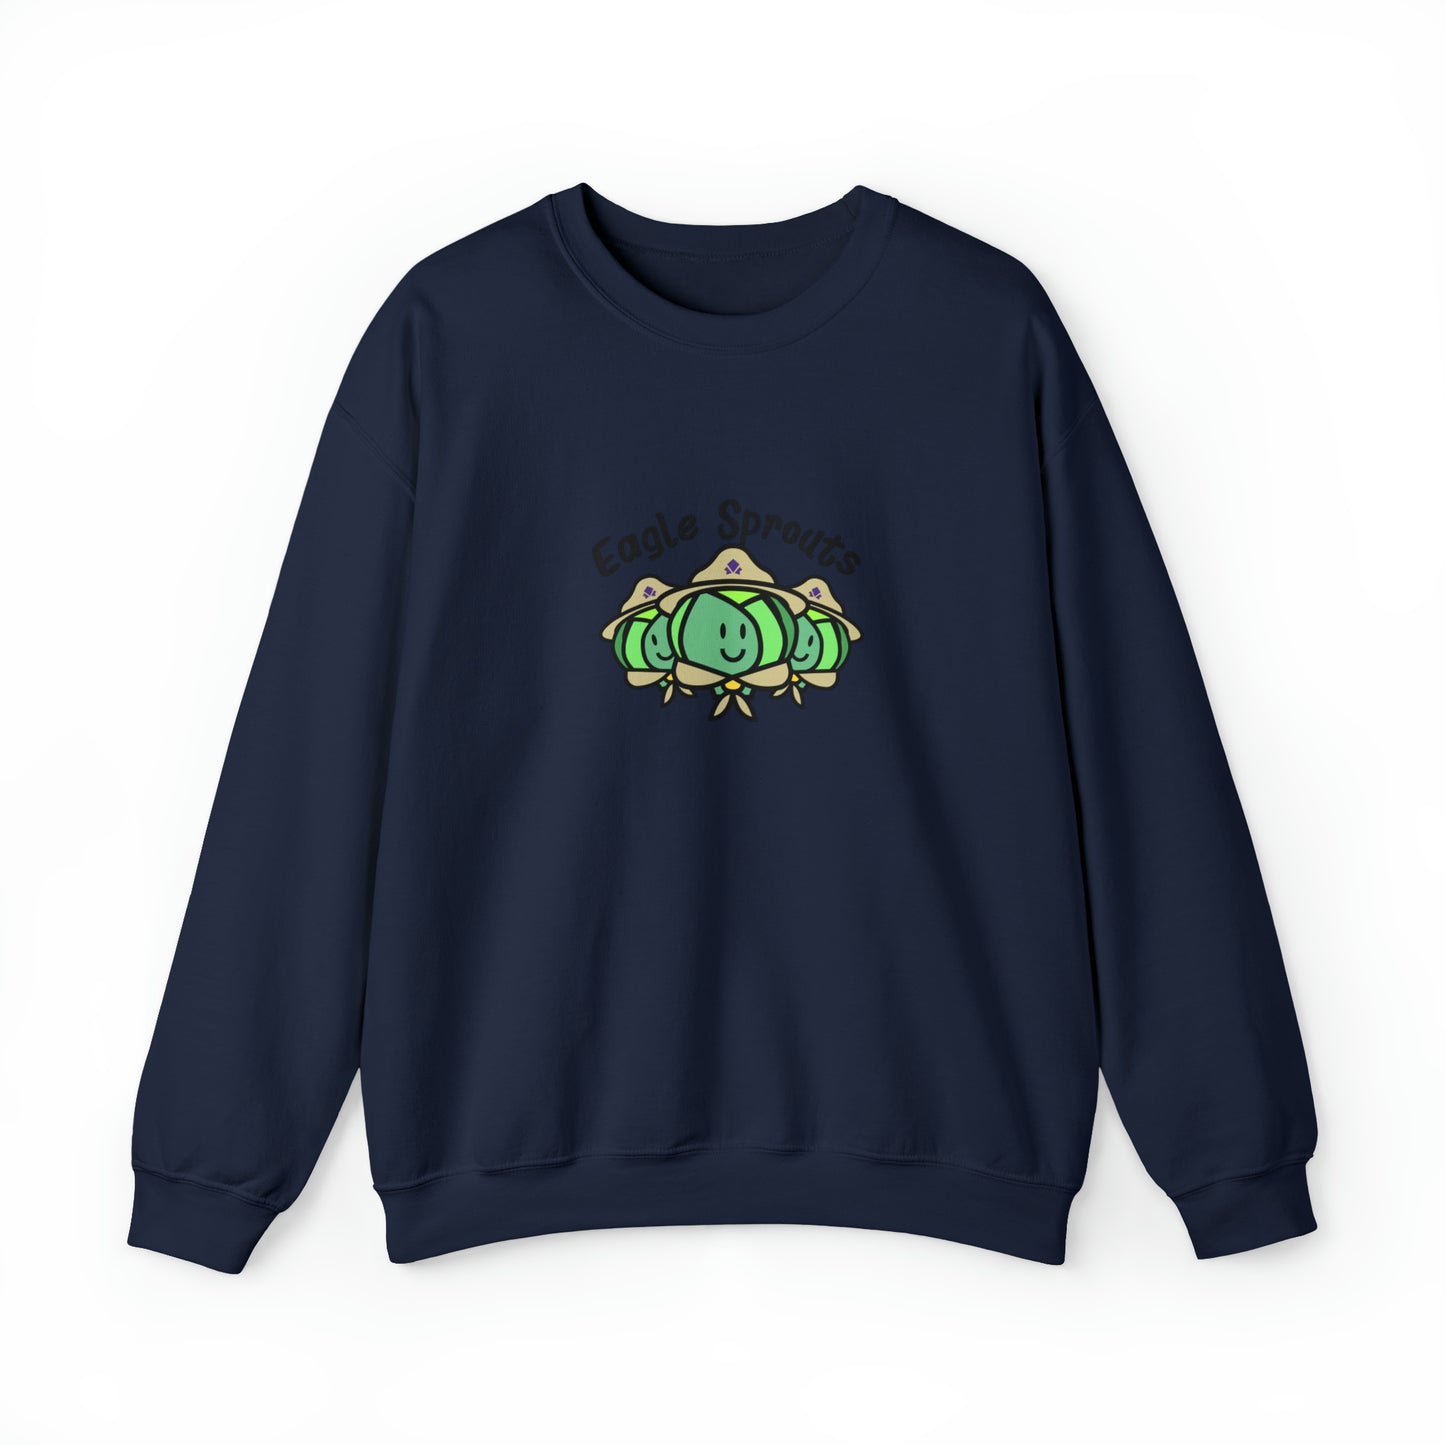 Custom Parody Crewneck Sweatshirt, Eagle Sprouts Design